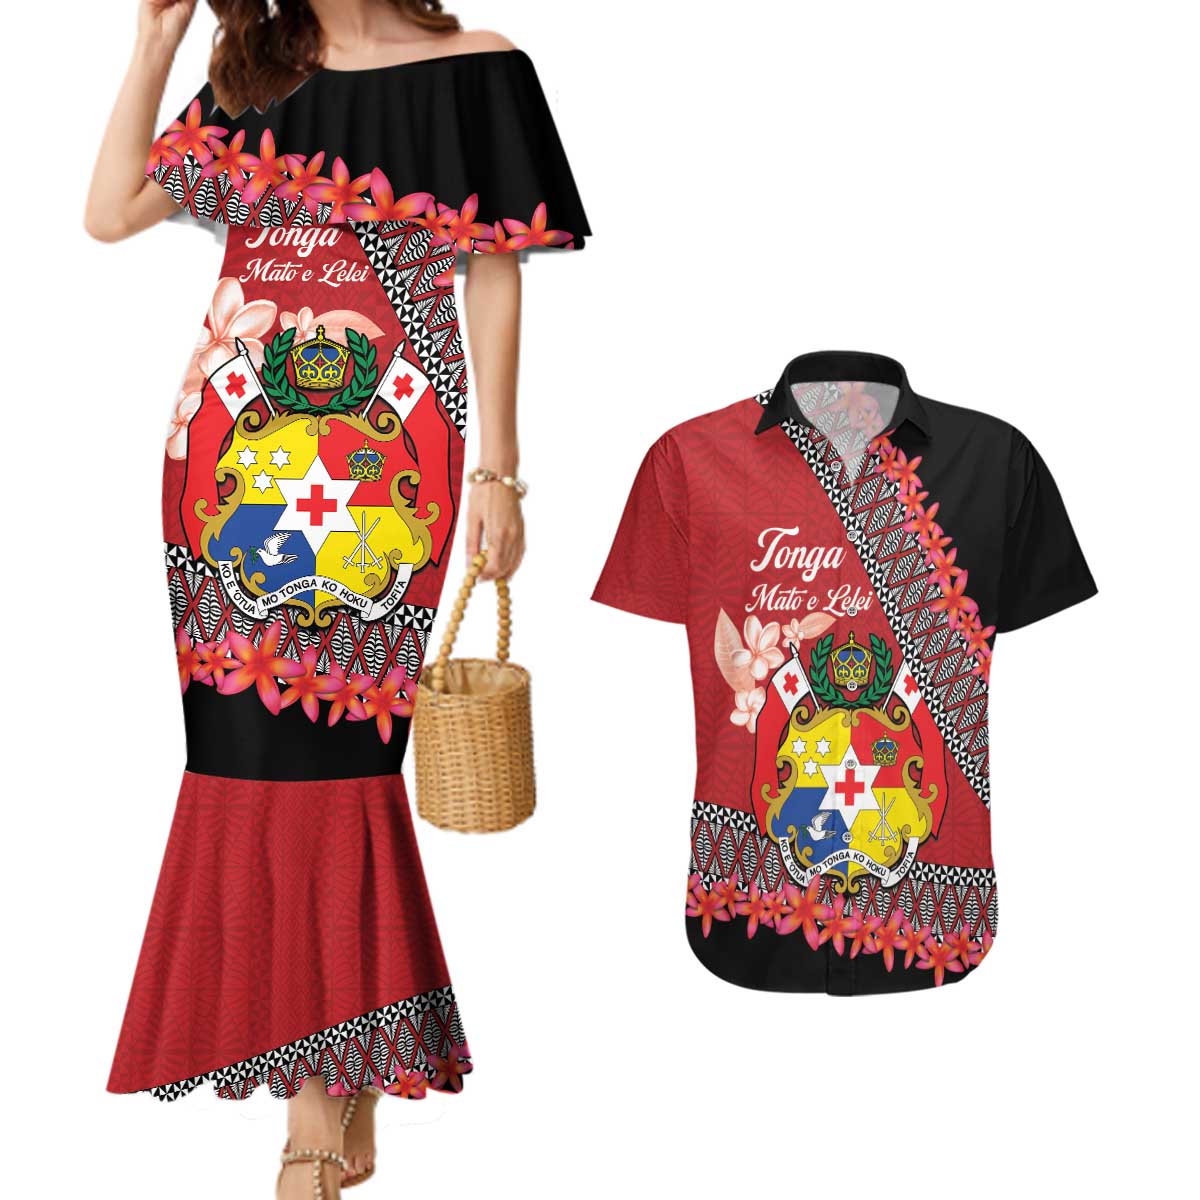 Personalised Tonga Language Week Couples Matching Mermaid Dress and Hawaiian Shirt Malo e Lelei Tongan Ngatu Pattern - Red